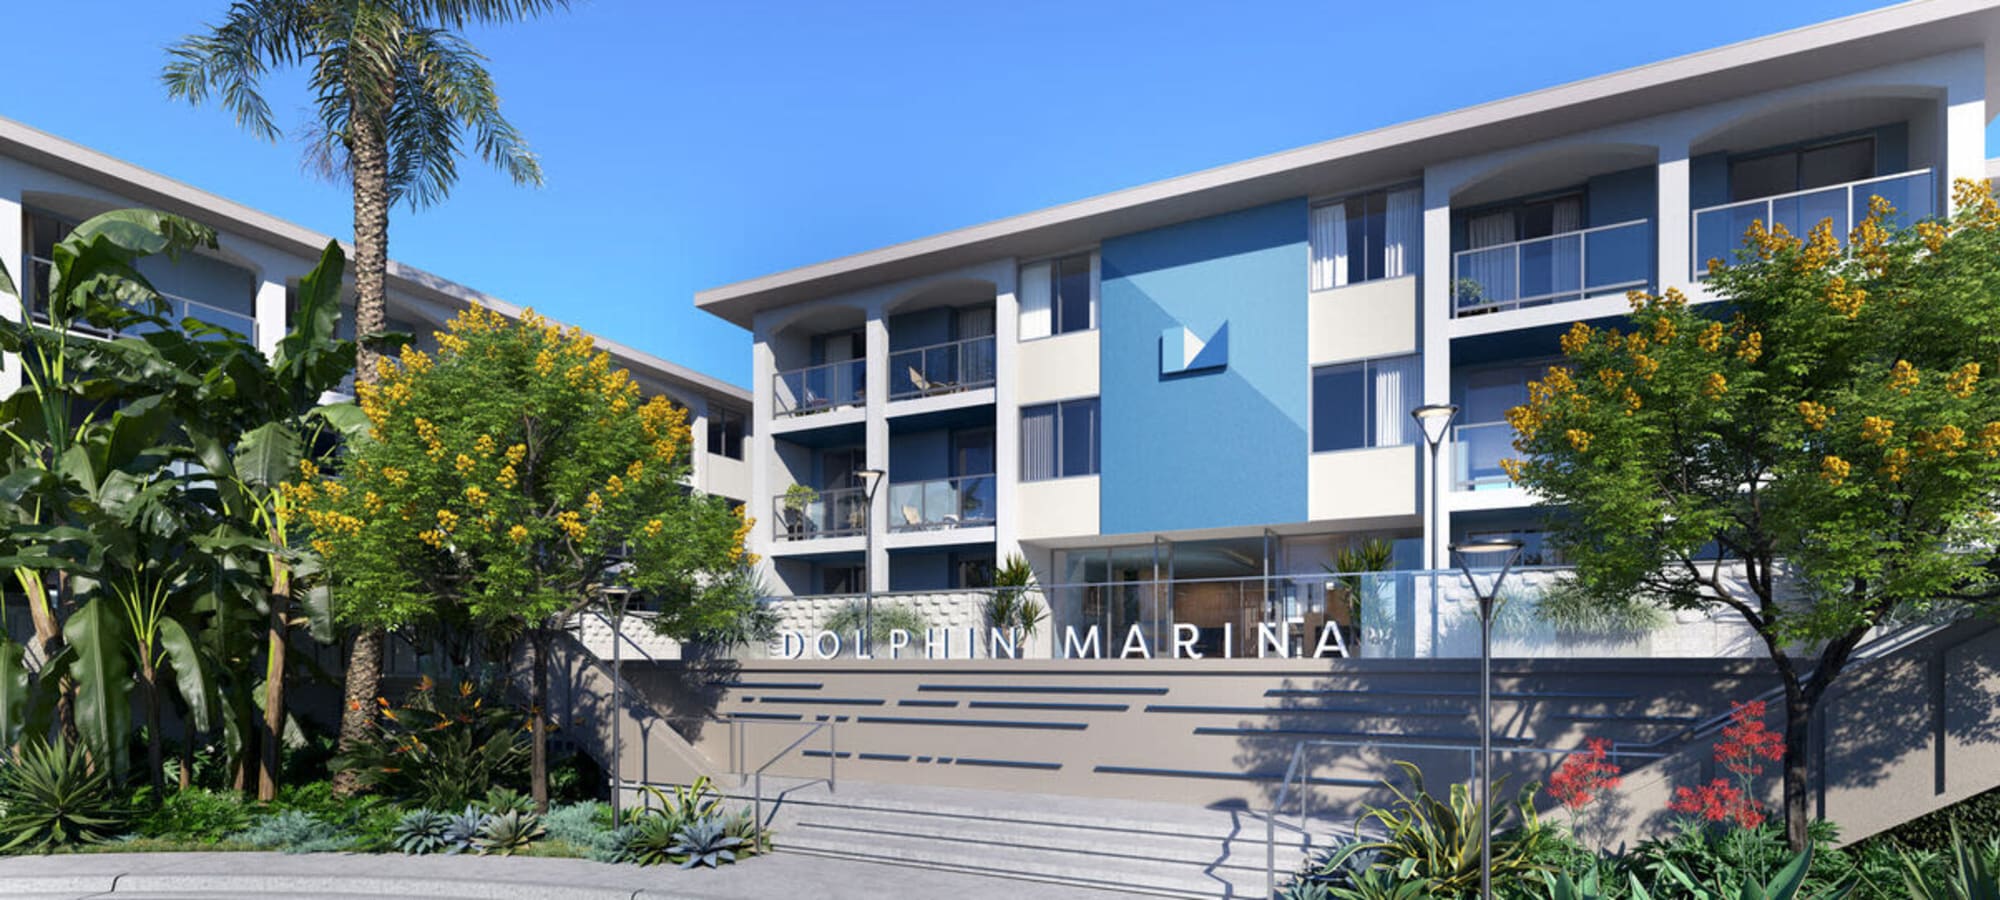 Dolphin Marina Apartments in Marina Del Rey, California